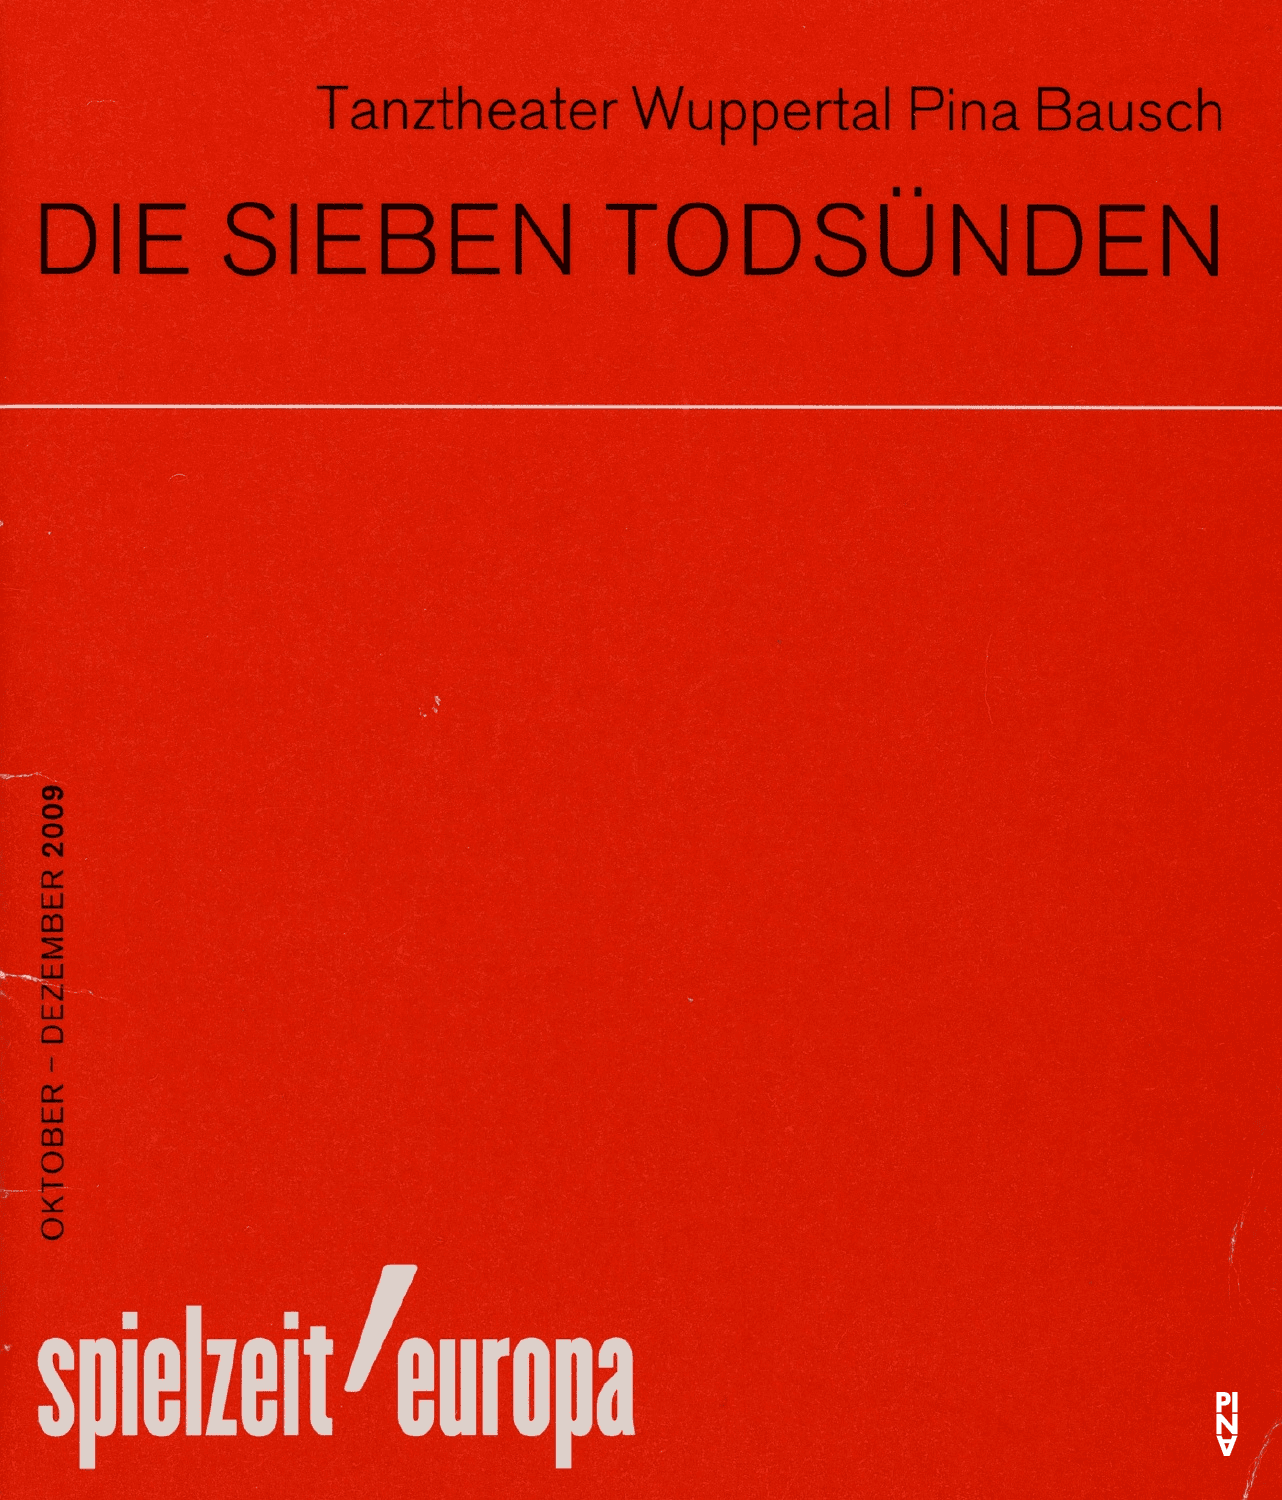 Programme pour « Les Sept Péchés capitaux » de Pina Bausch avec Tanztheater Wuppertal à Berlin, 10 déc. 2009 – 13 déc. 2009